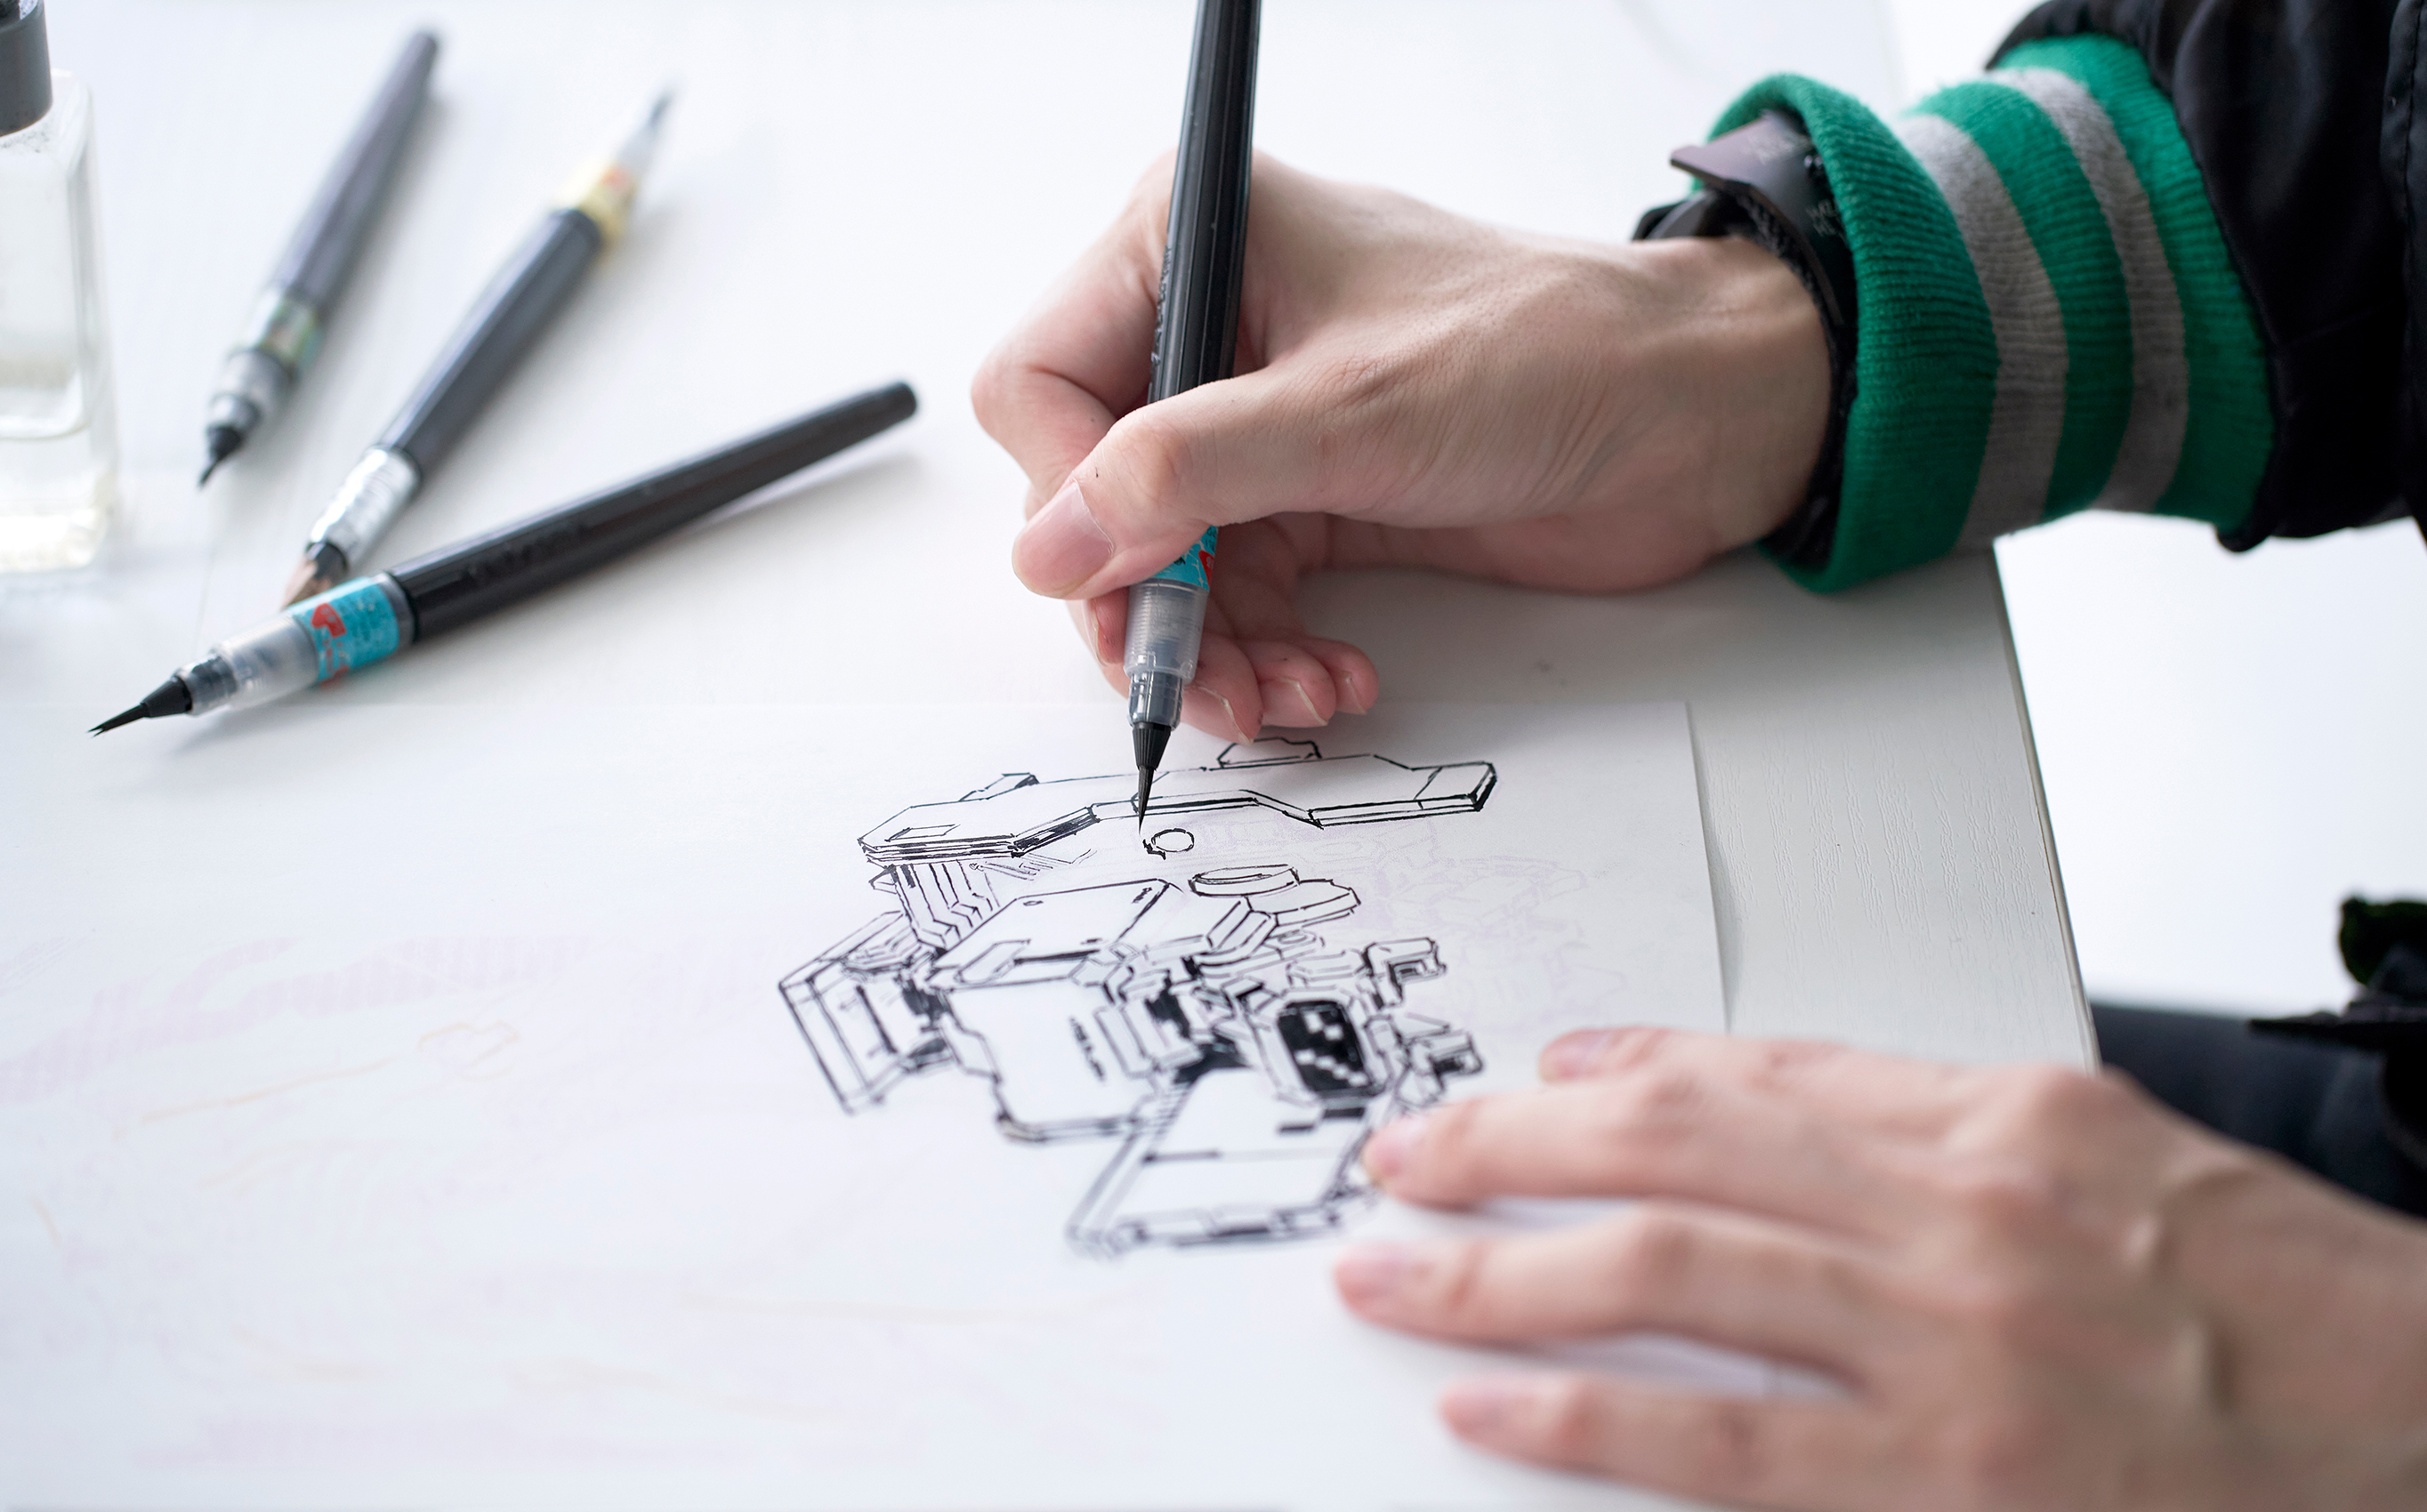 メカニックデザインのかっこよさを引き出す、 “高クオリティ画筆”としての筆ペン。 イラストレーター・メカニックデザイナー／JNTHEDさん